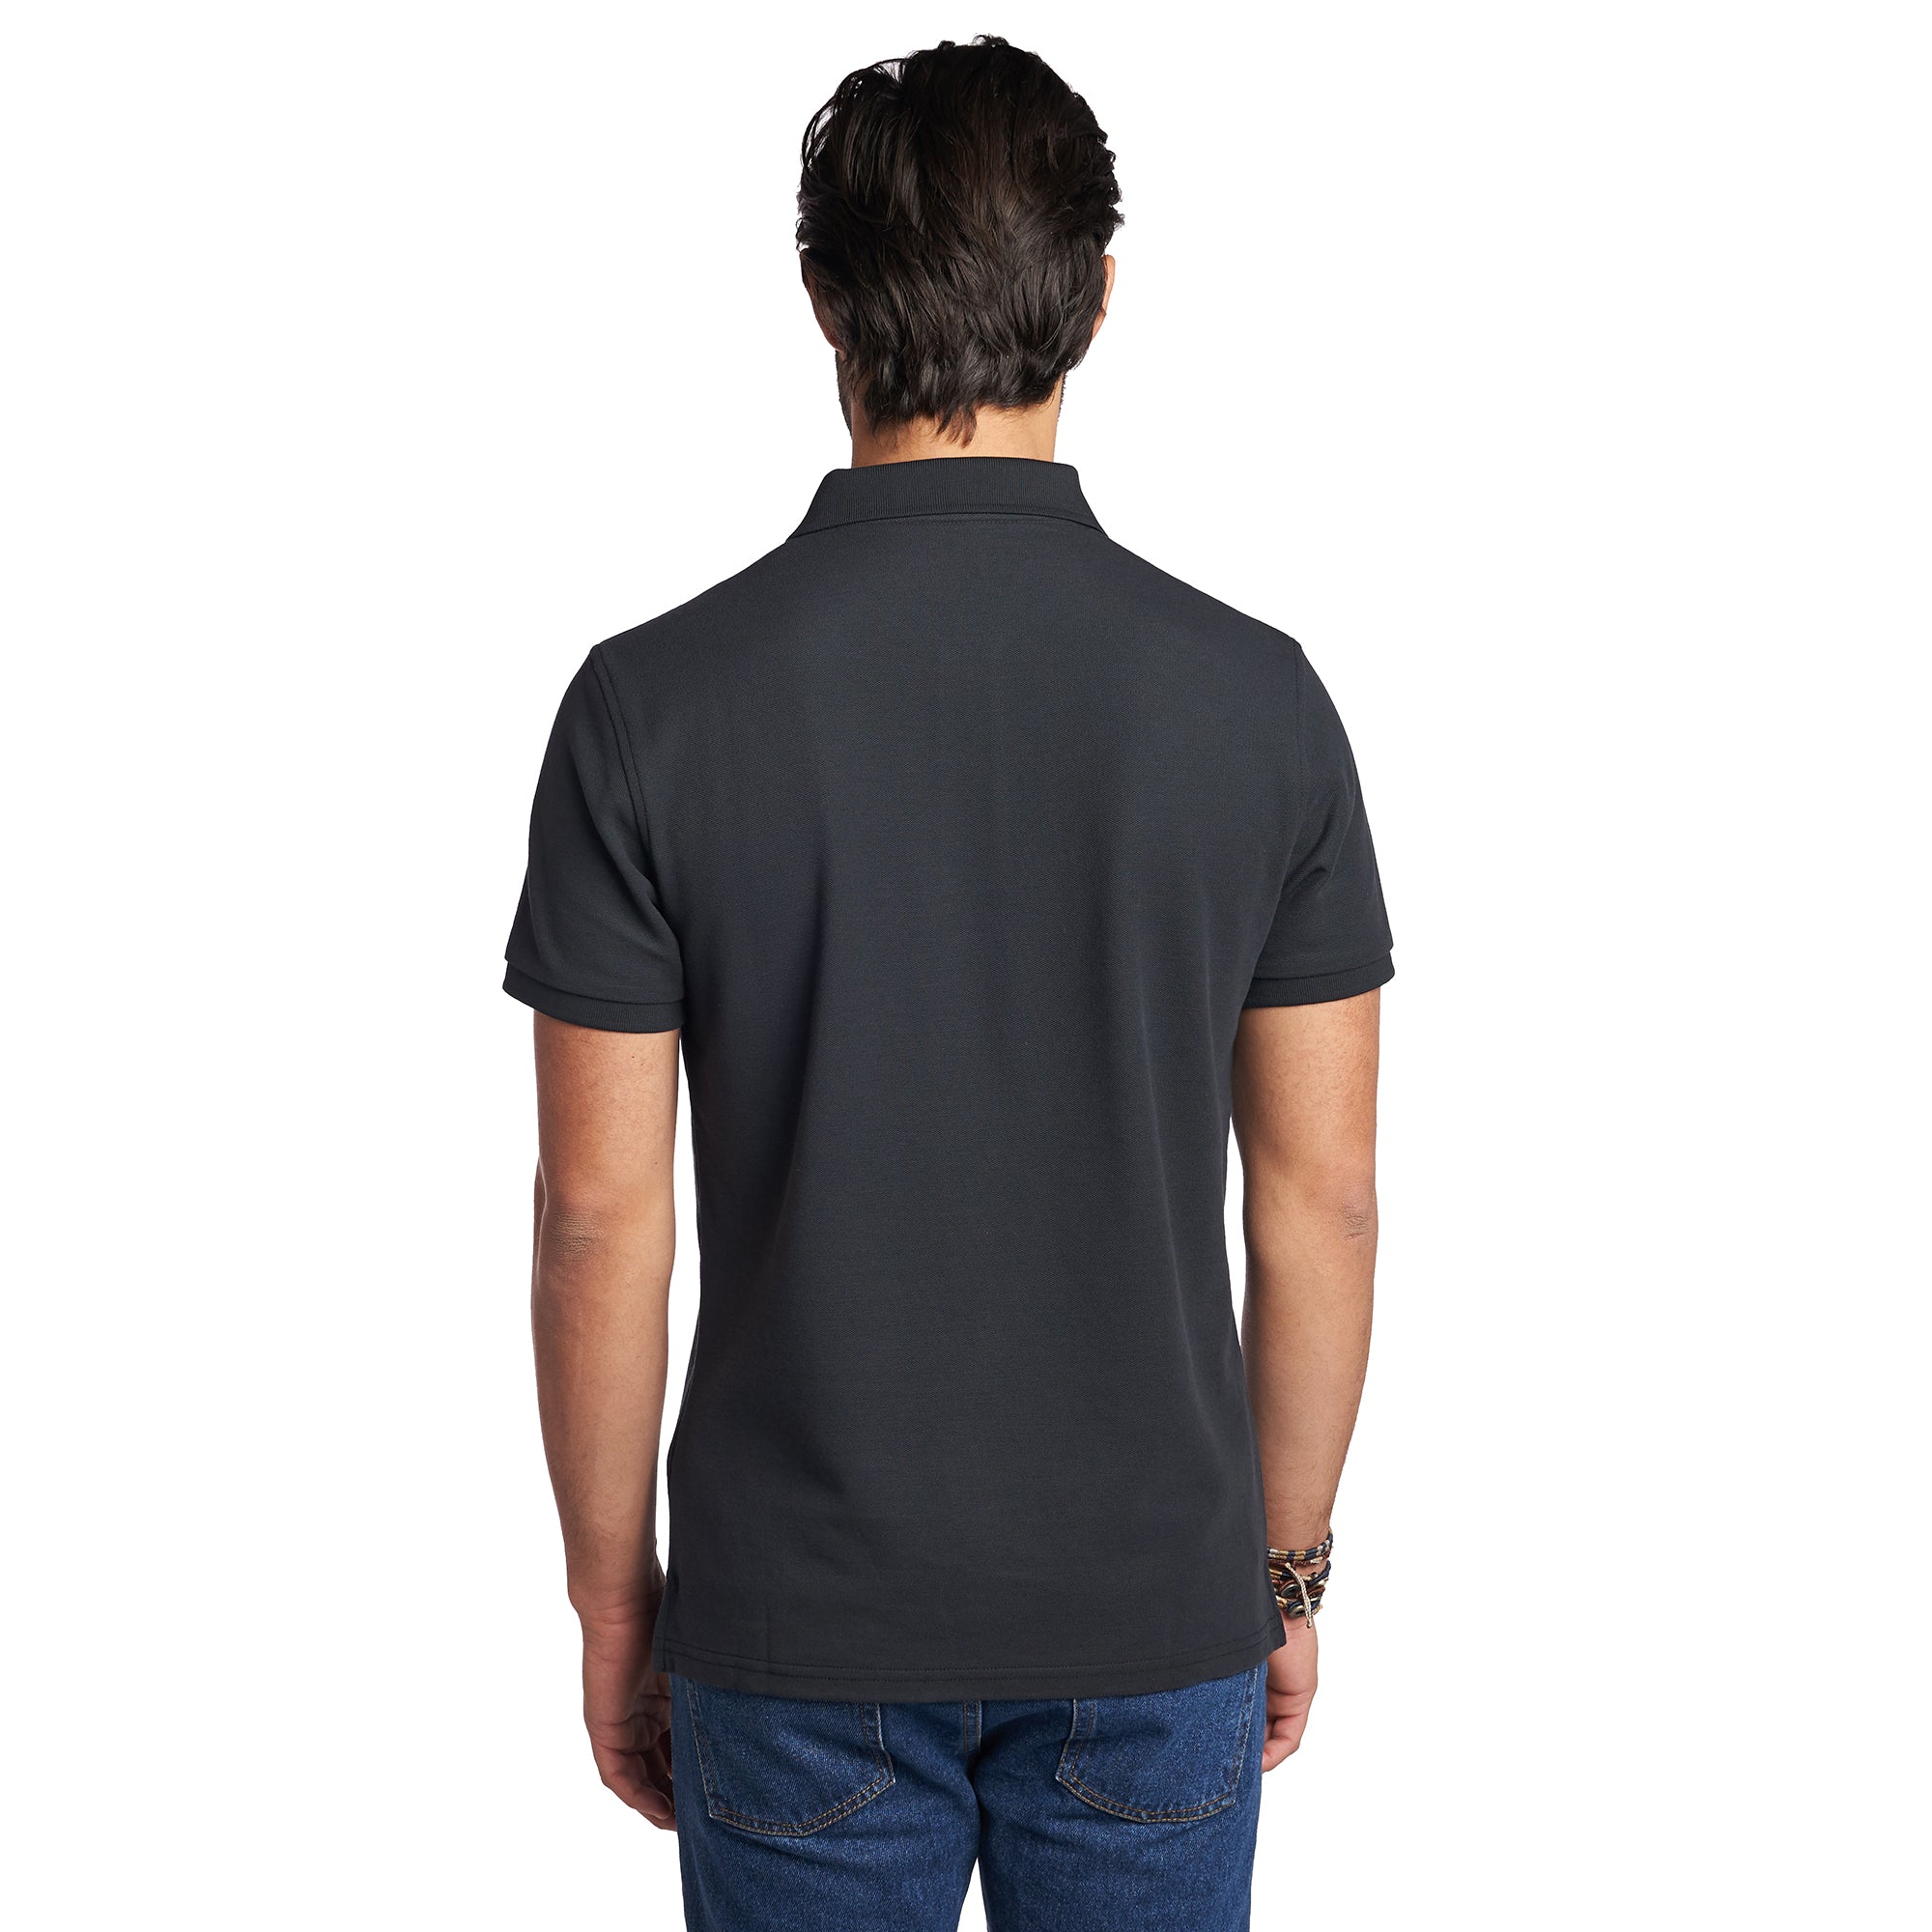 James Polo Shirt - Black